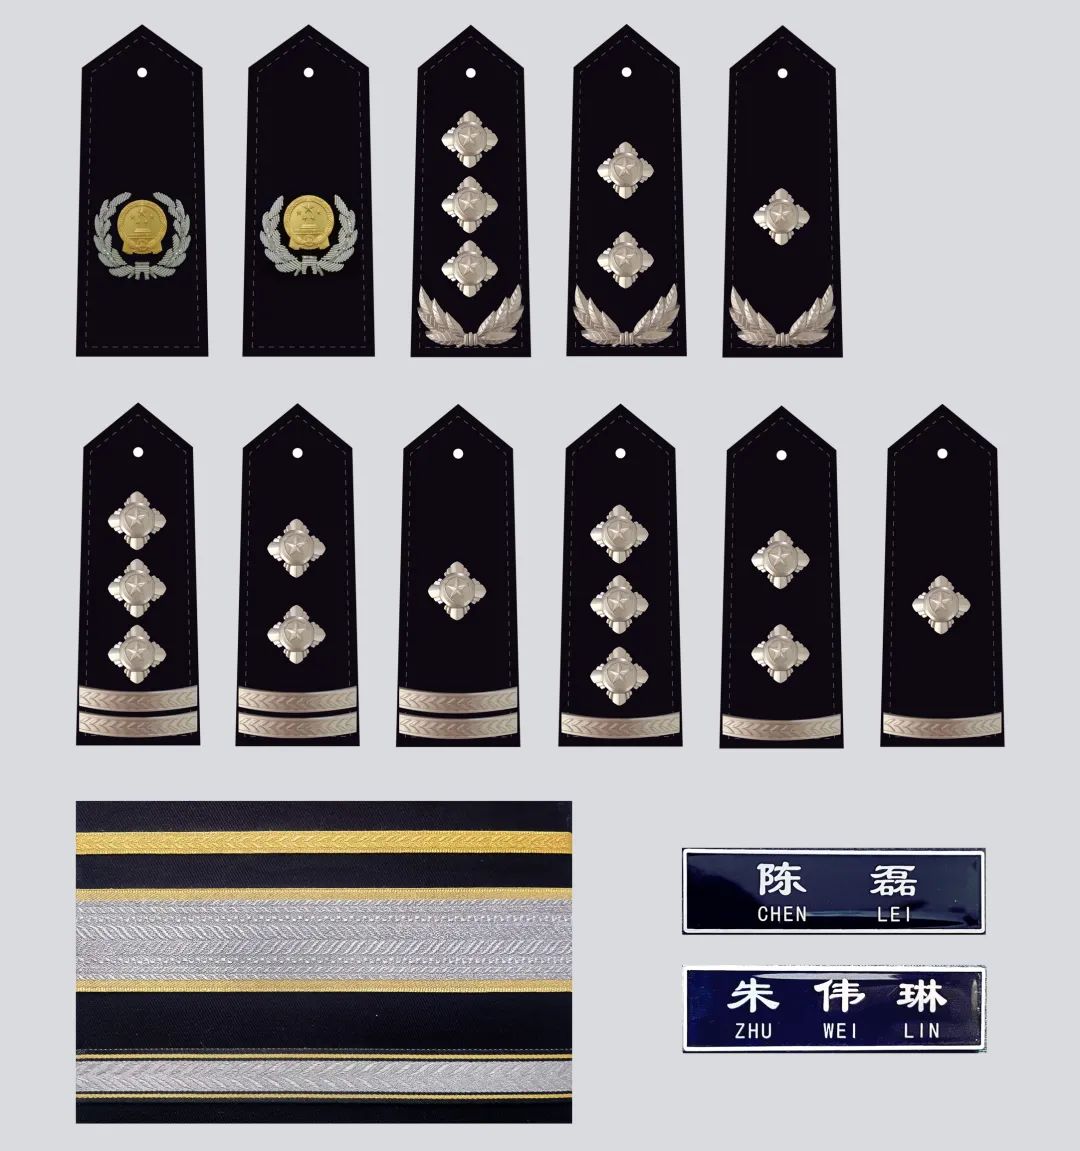 新式警察襯衫(長)-丈青色 – 蘭迪亞服飾企業有限公司